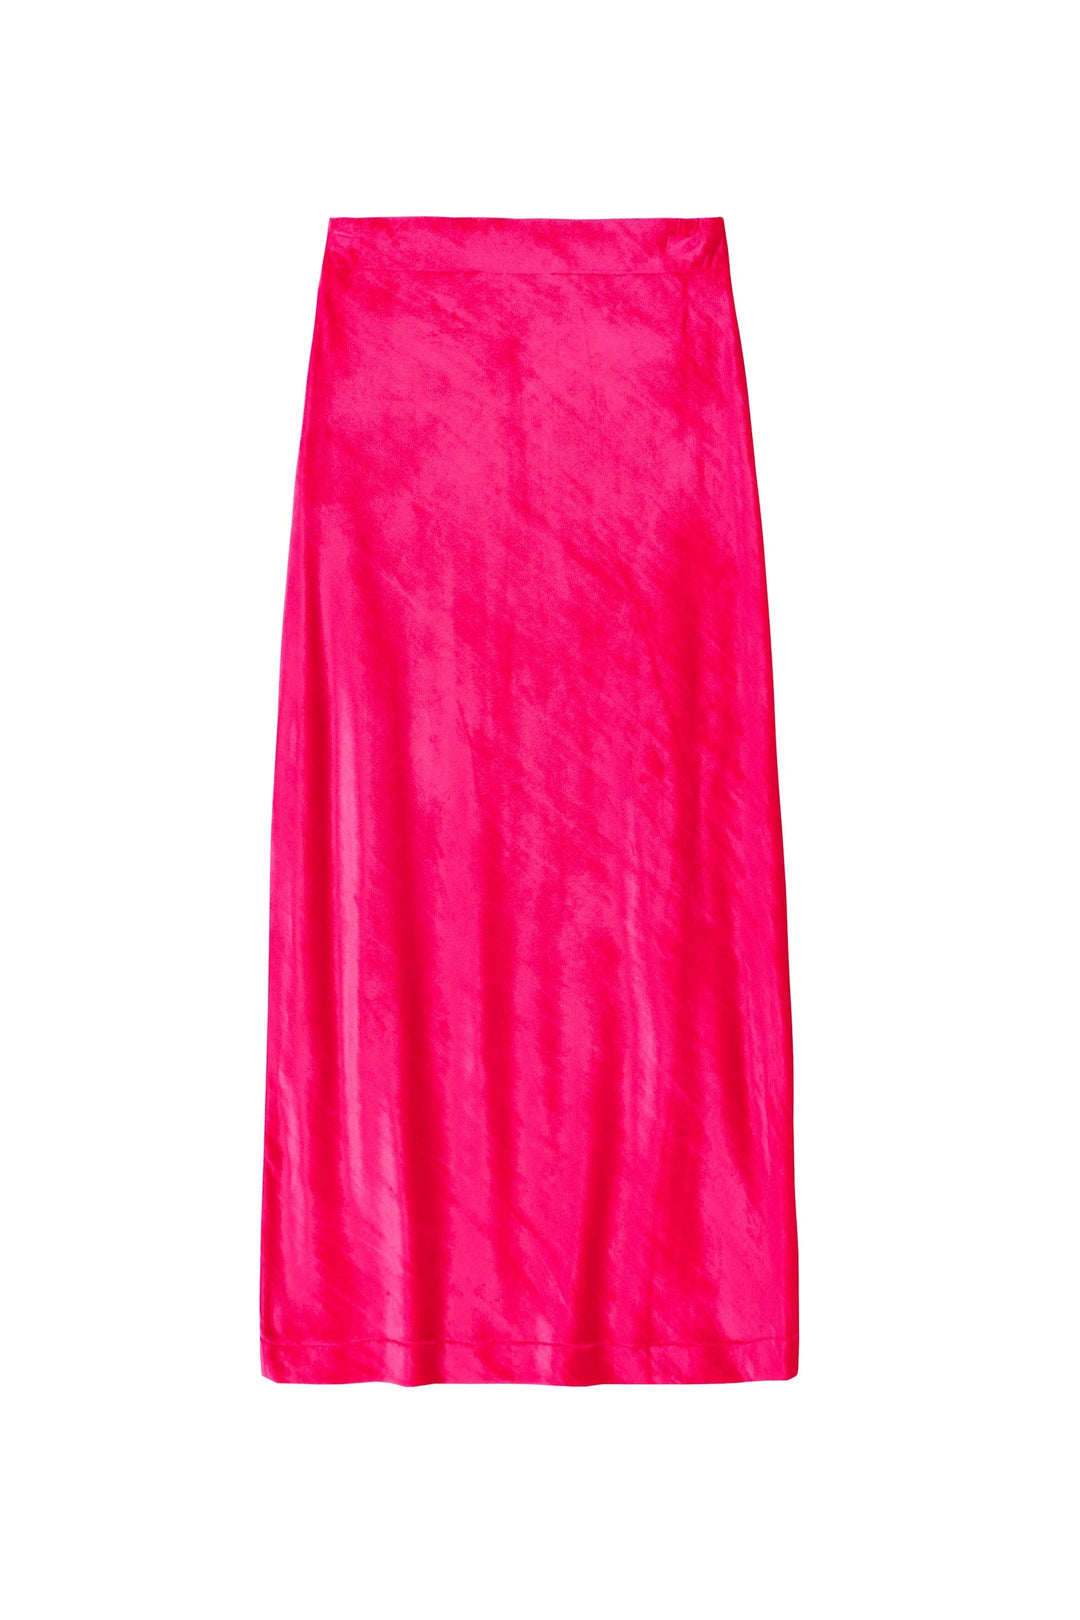 Kettlewell Velvet Skirt - Fuschia (Wi)